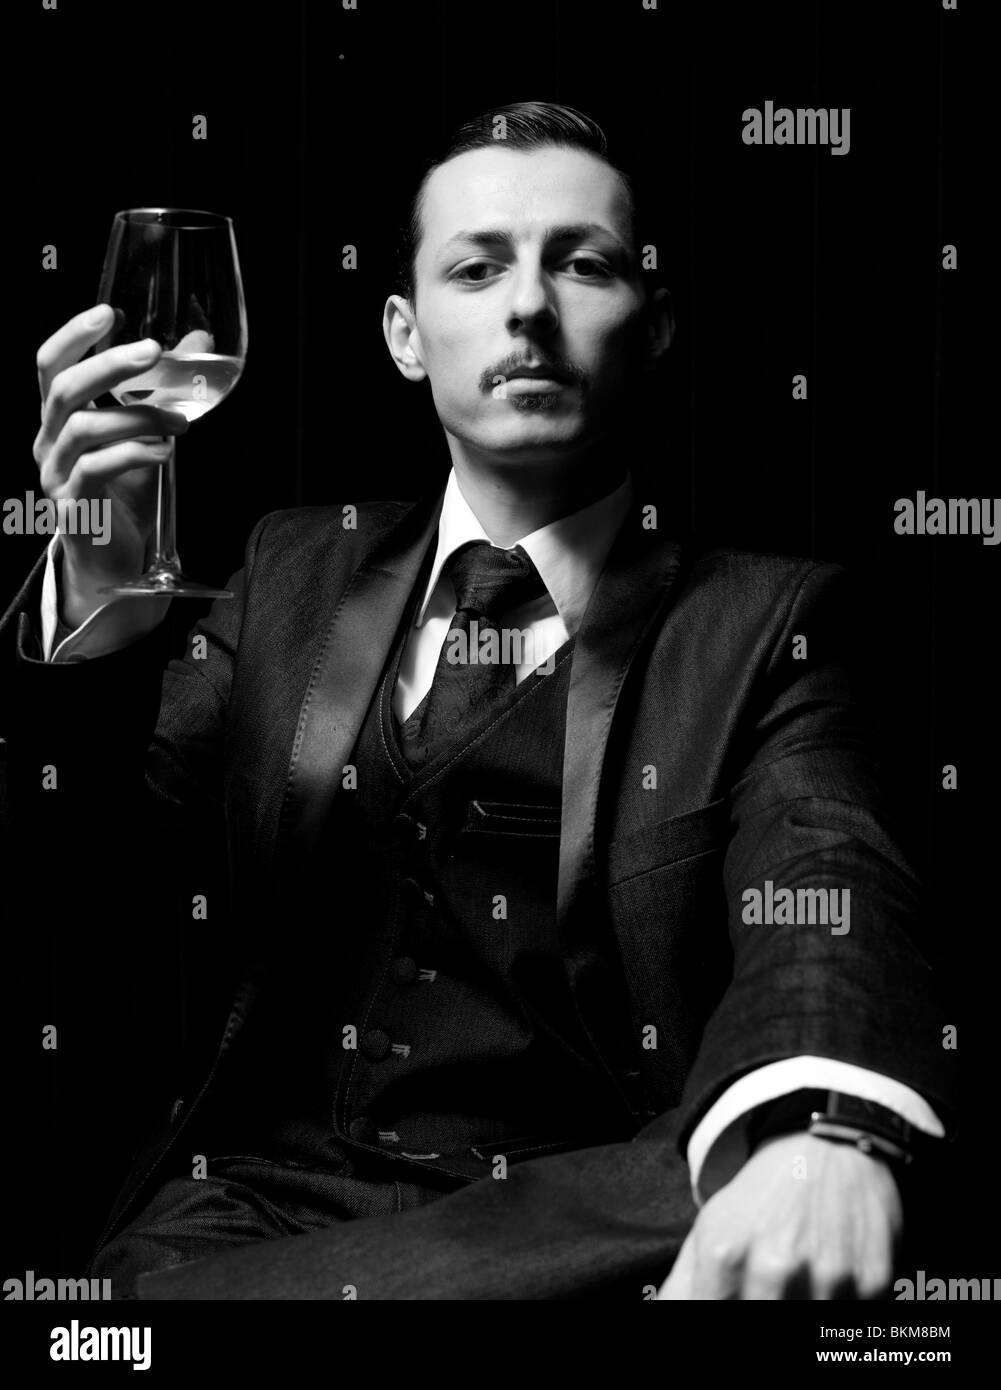 Halblanges Schwarz-Weiß-Porträt eines feierlichen Mannes, der ein Glas Weißwein aufhebt, London, England, Großbritannien. Stockfoto